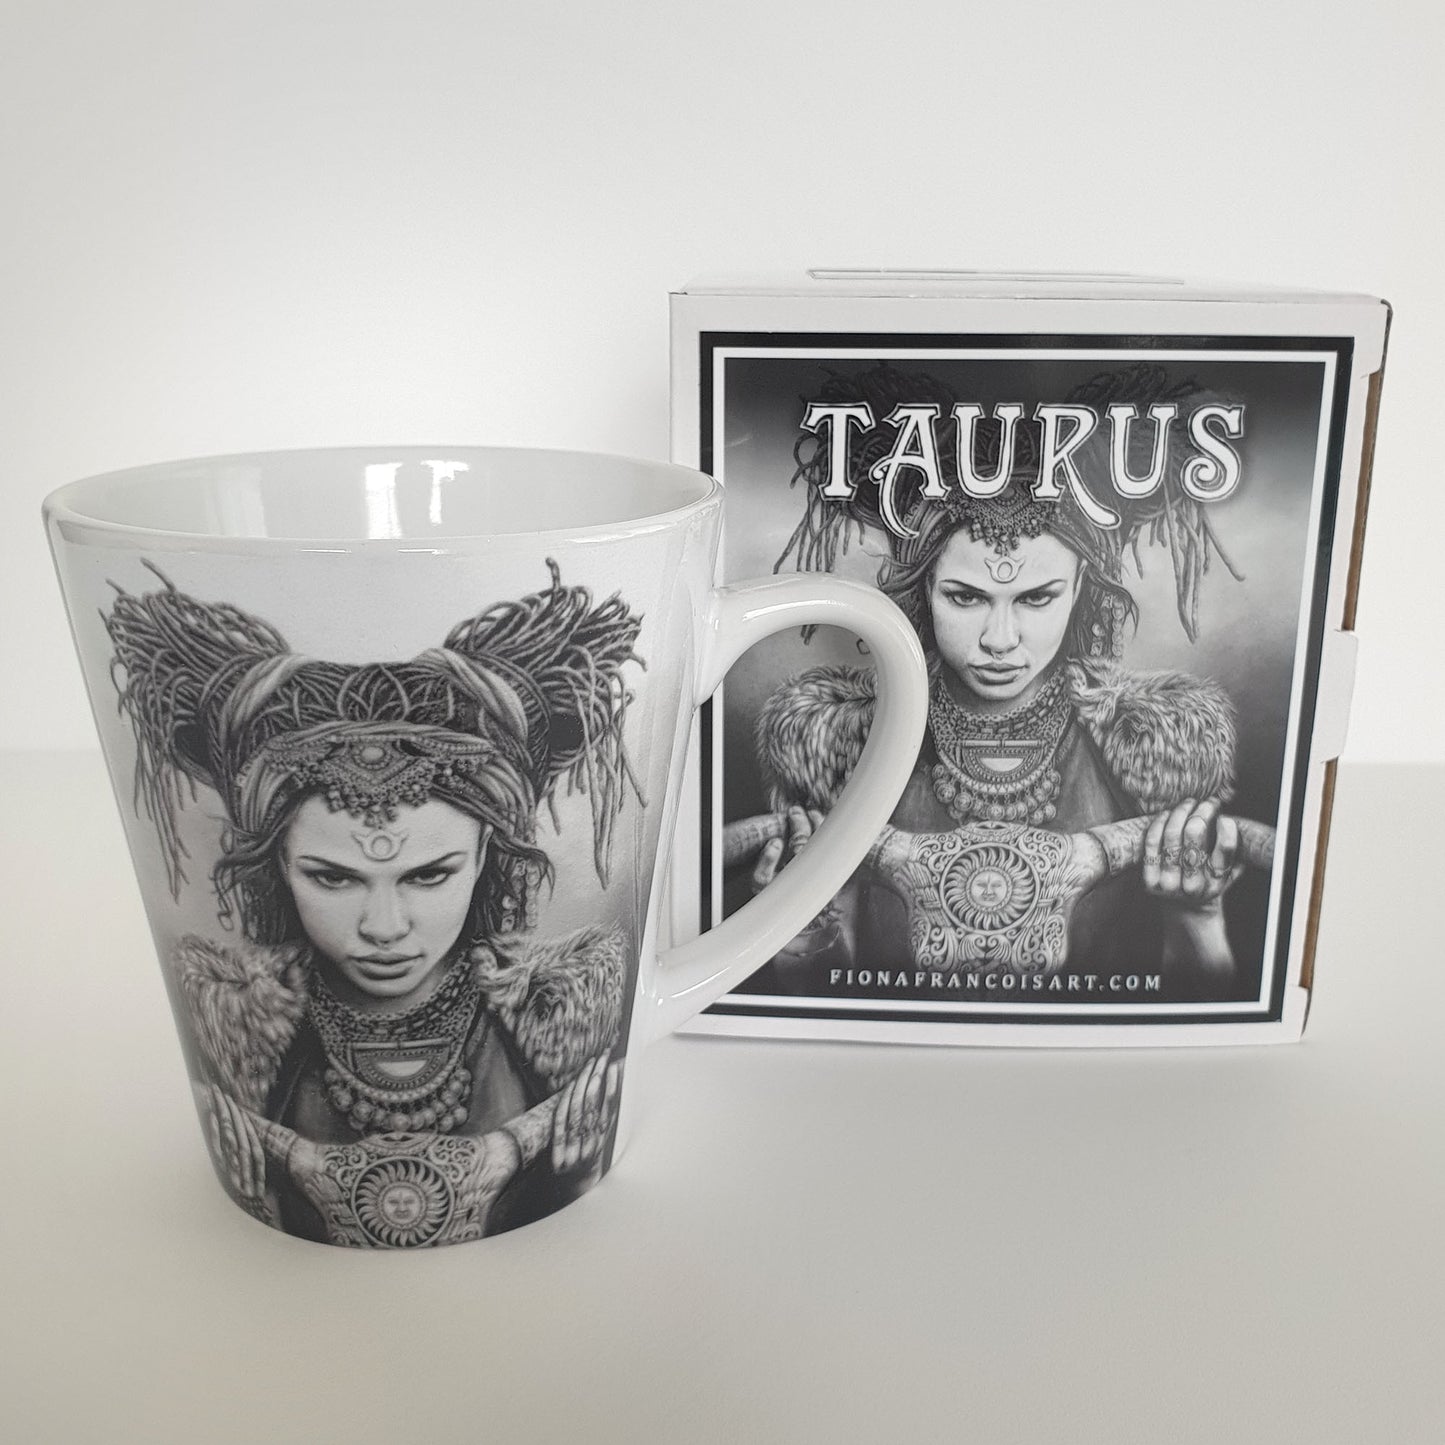 'Taurus' ceramic mug